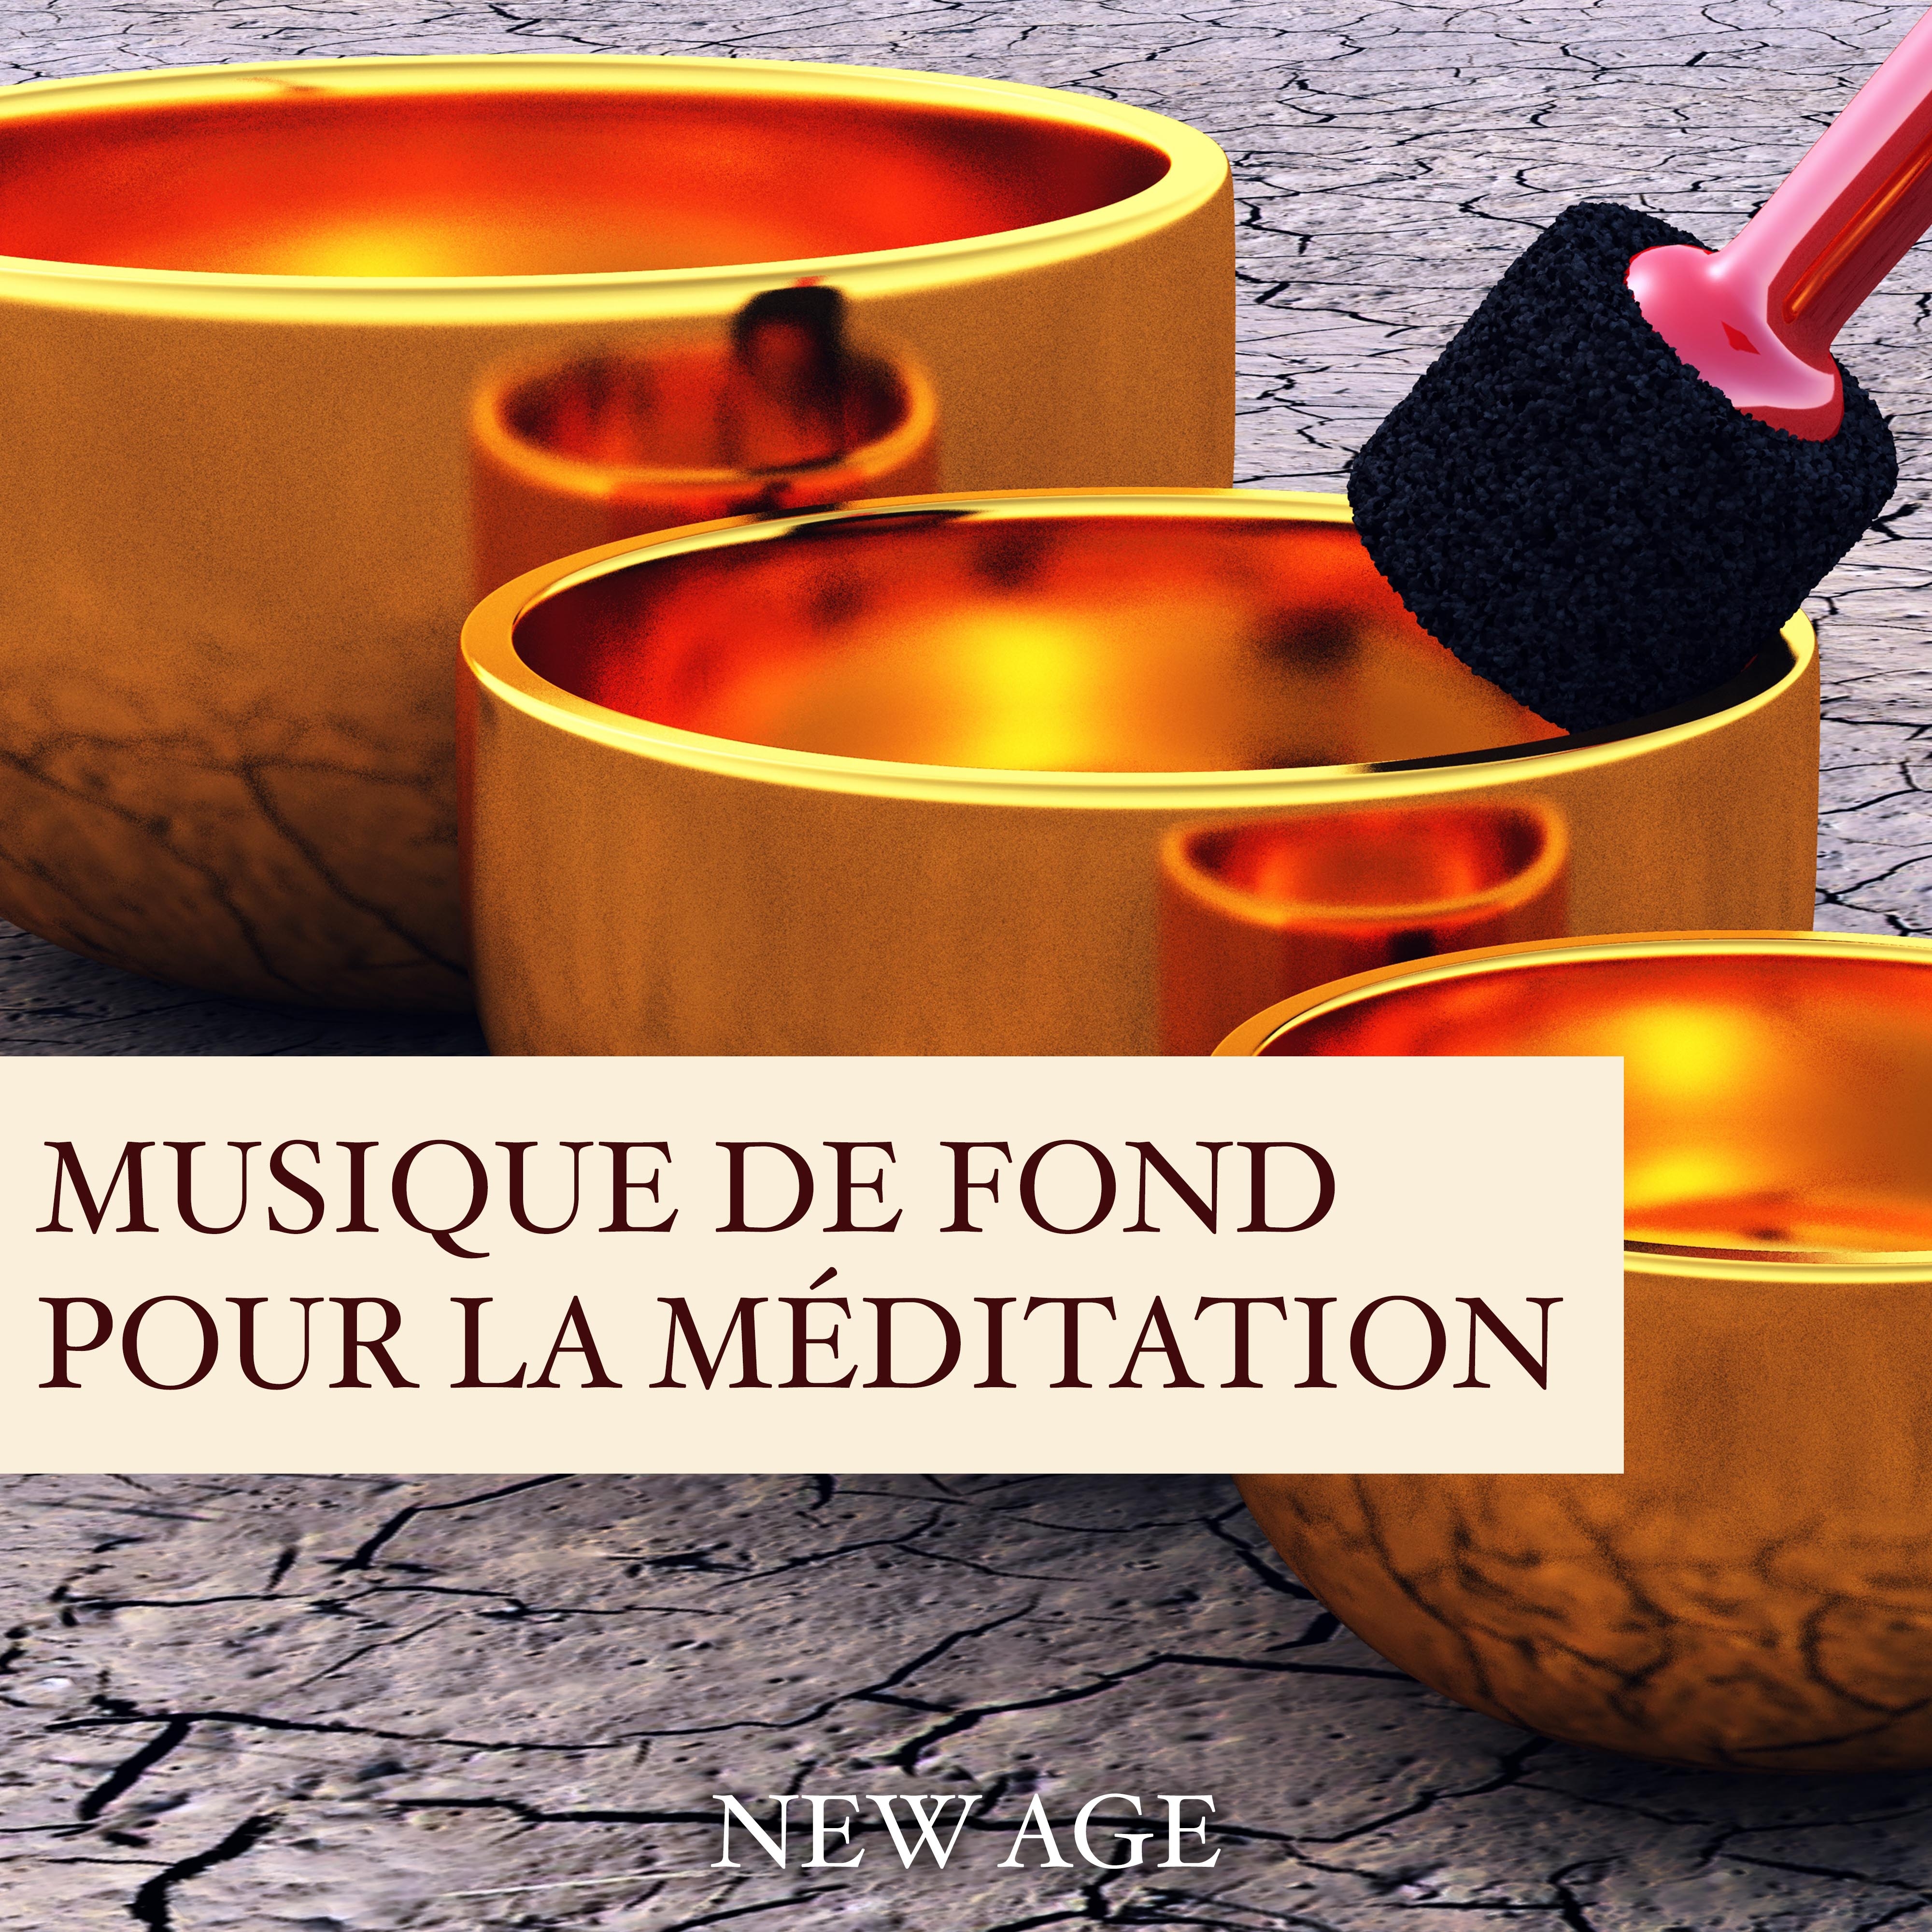 Musique de Fond pour la Méditation Bouddhiste et Musique pour Apprendre à Méditer